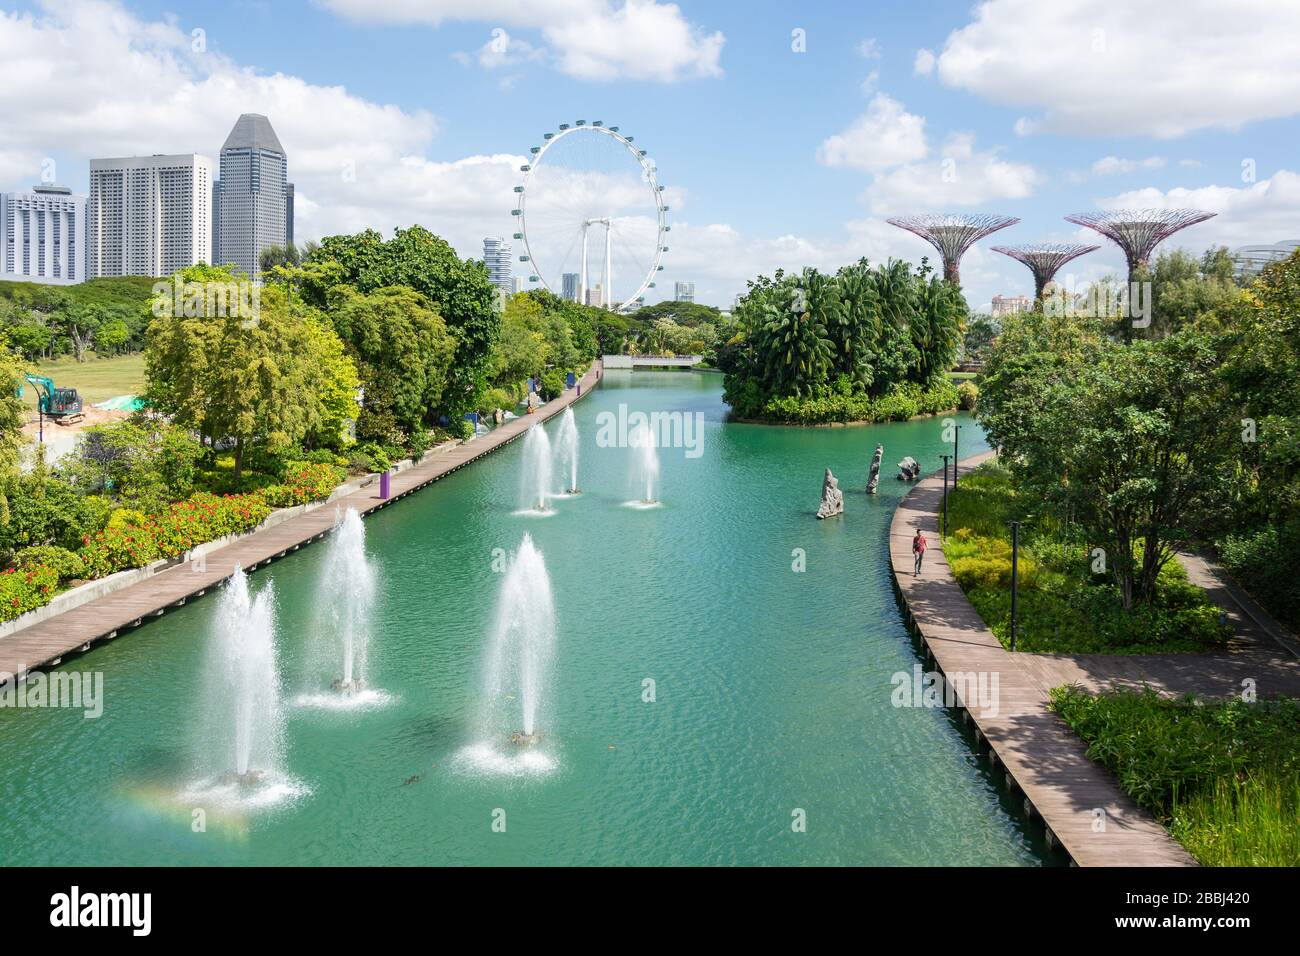 Fontaines sur le lac Dragonfly dans les jardins près de la baie, centre-ville, Marina South, Singapour Banque D'Images